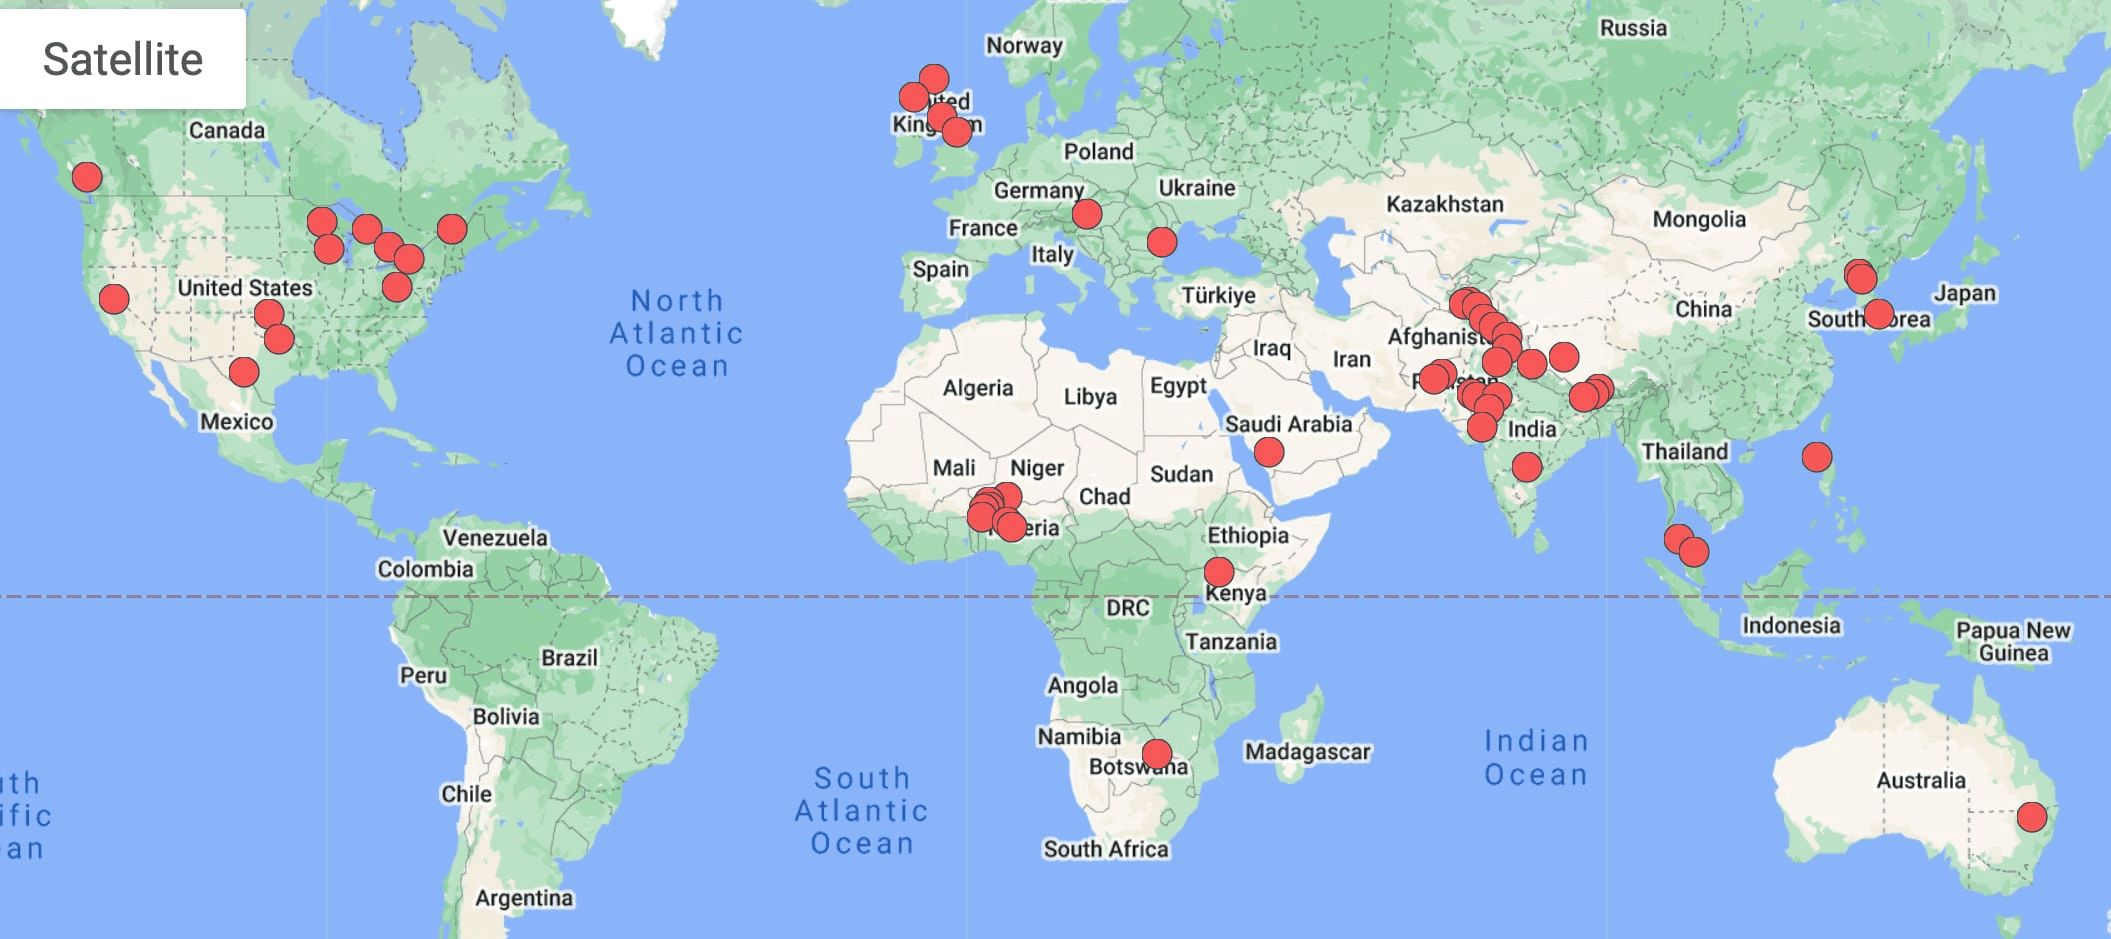 Meetup.com Map of Cloud Clubs worldwide